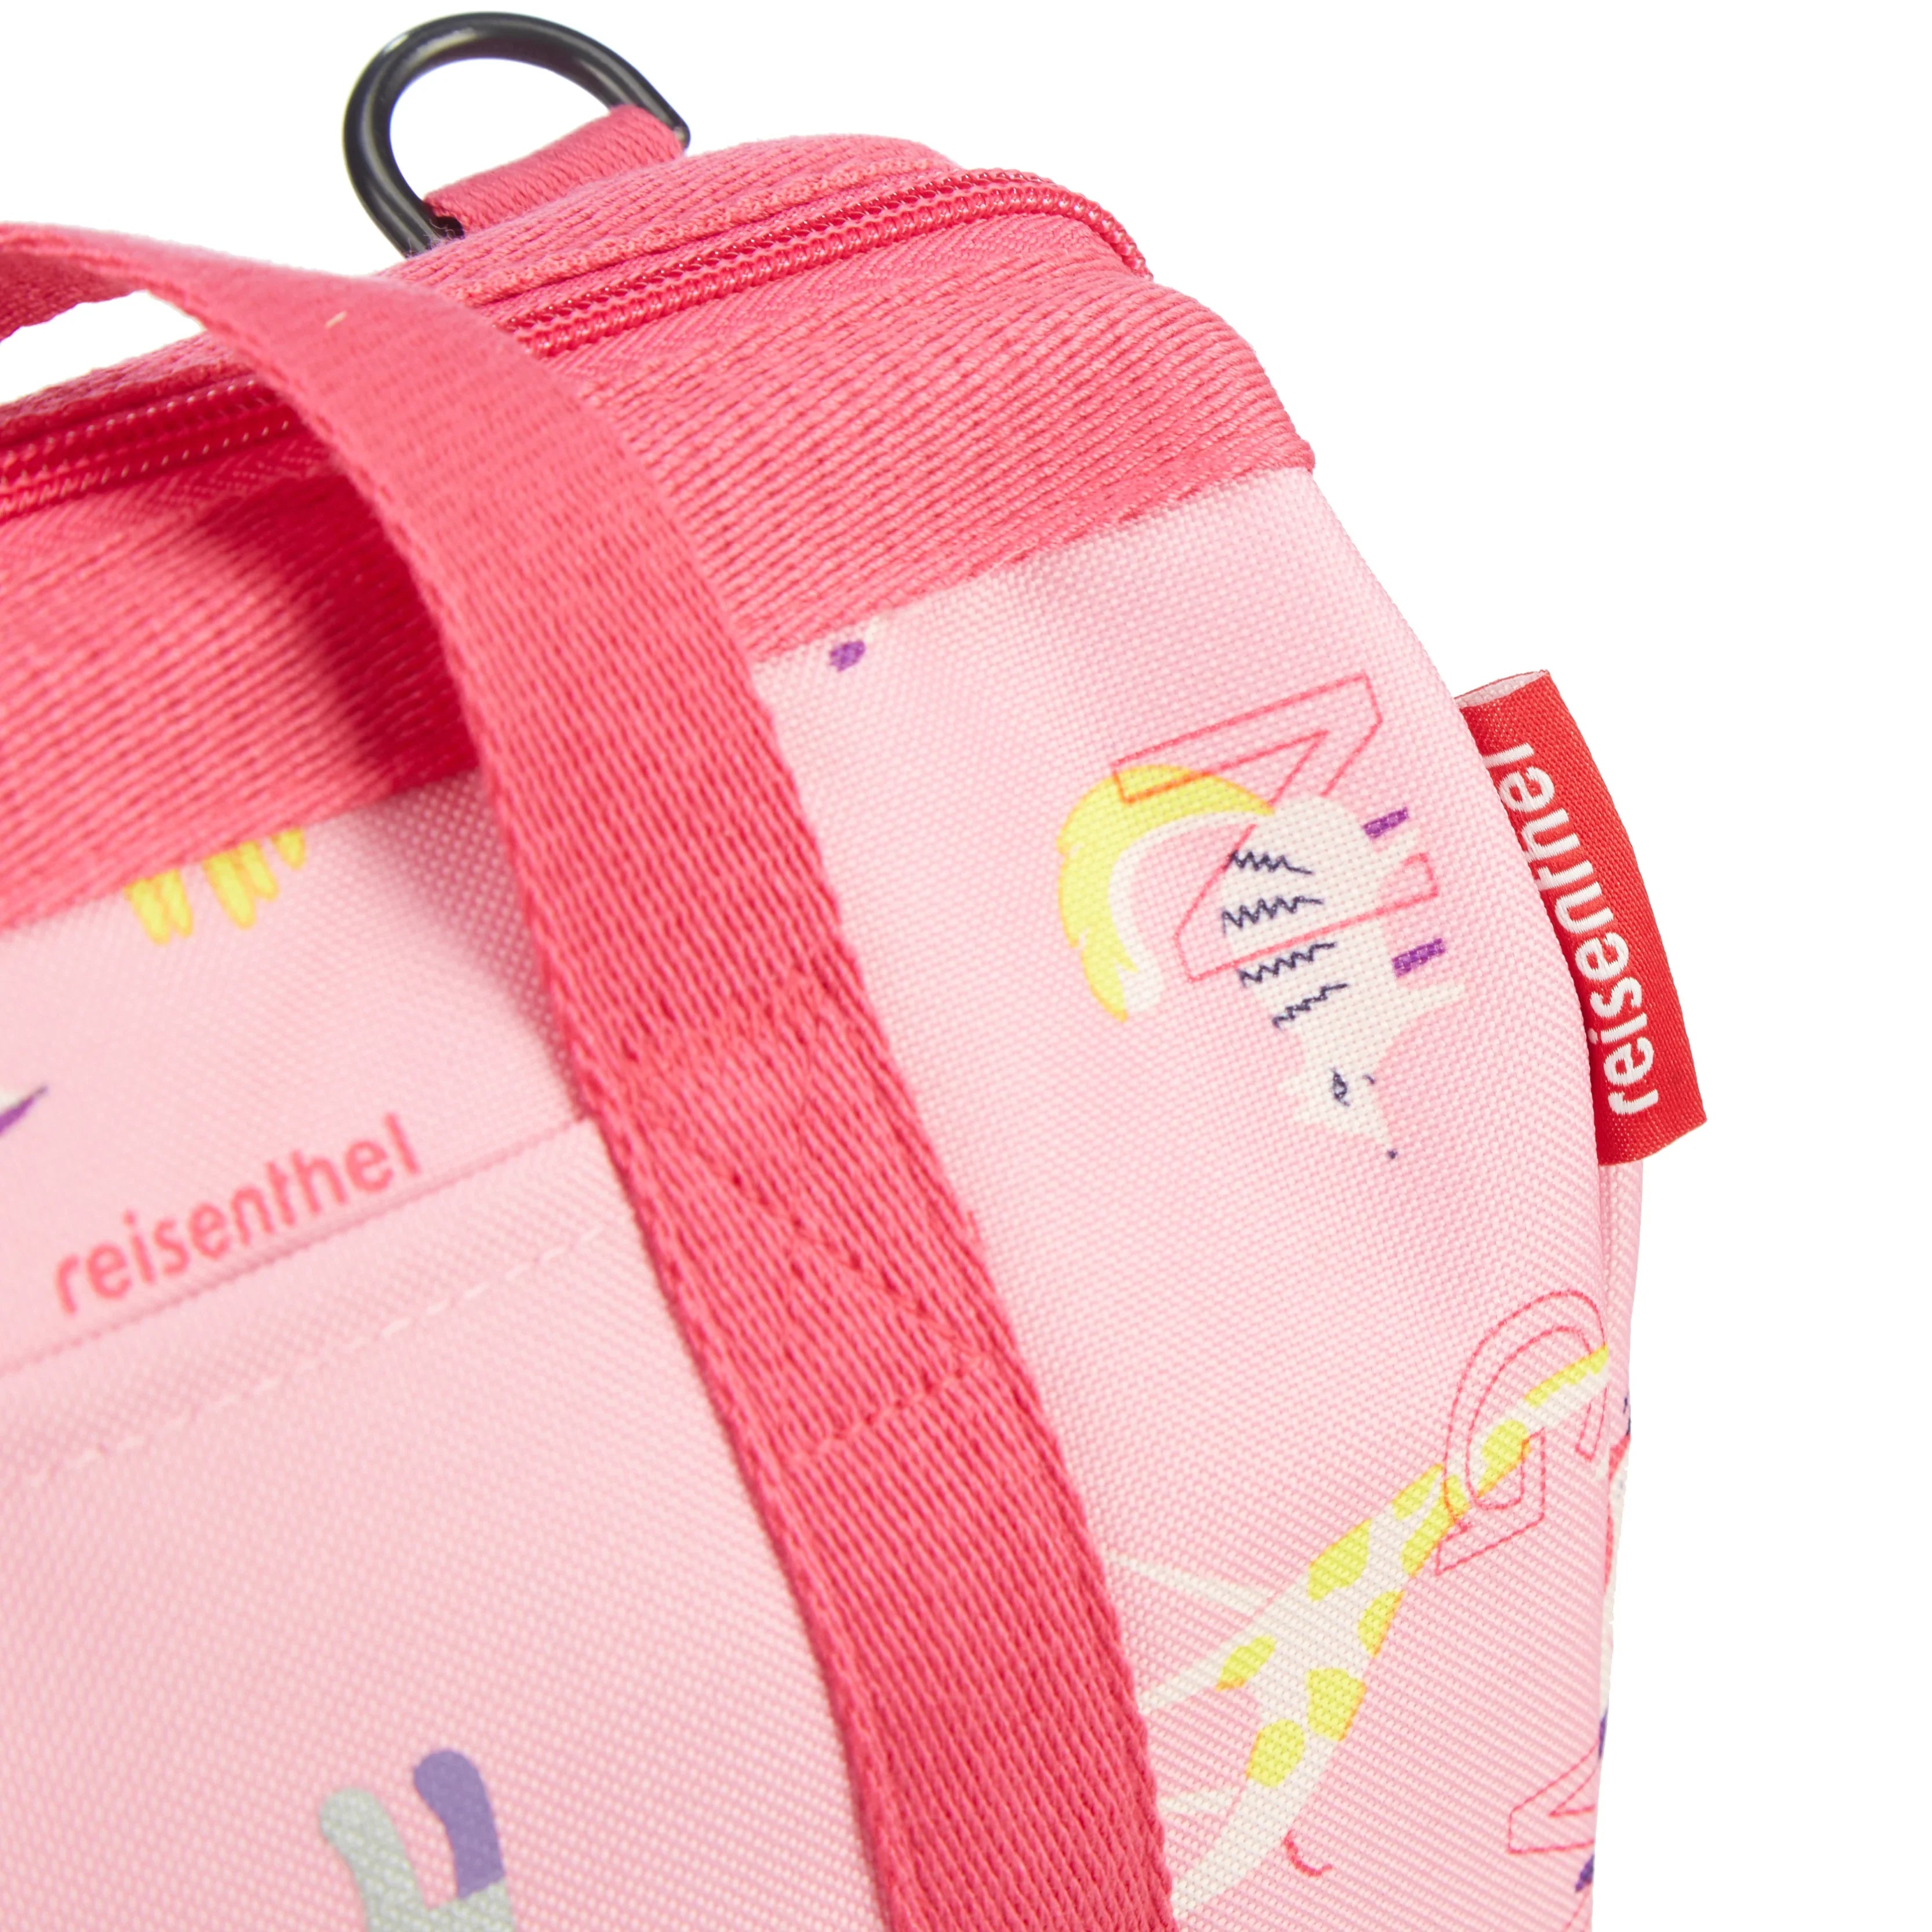 Reisenthel Kids Allrounder travel bag XS 27 cm - panda dots pink